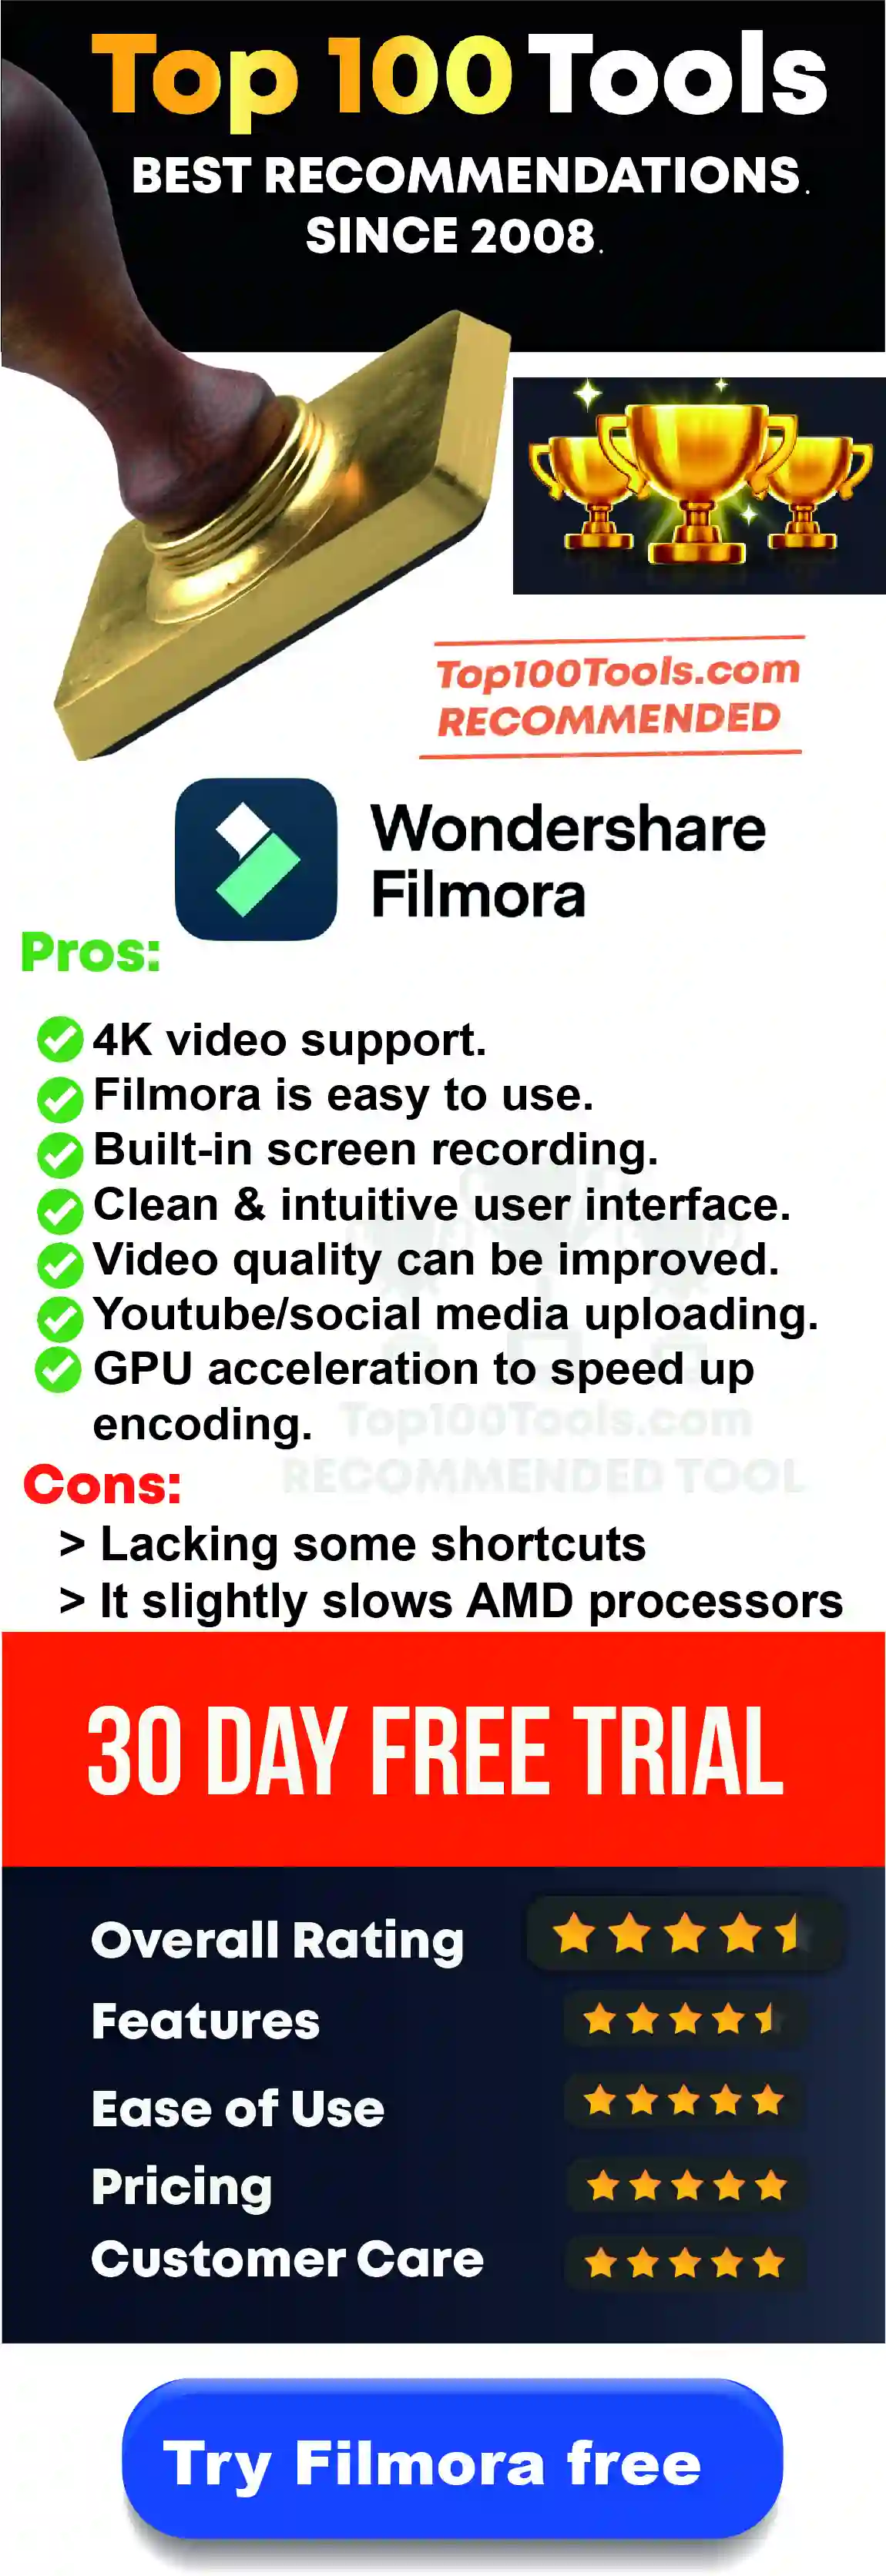 Filmora free trial for 30 days